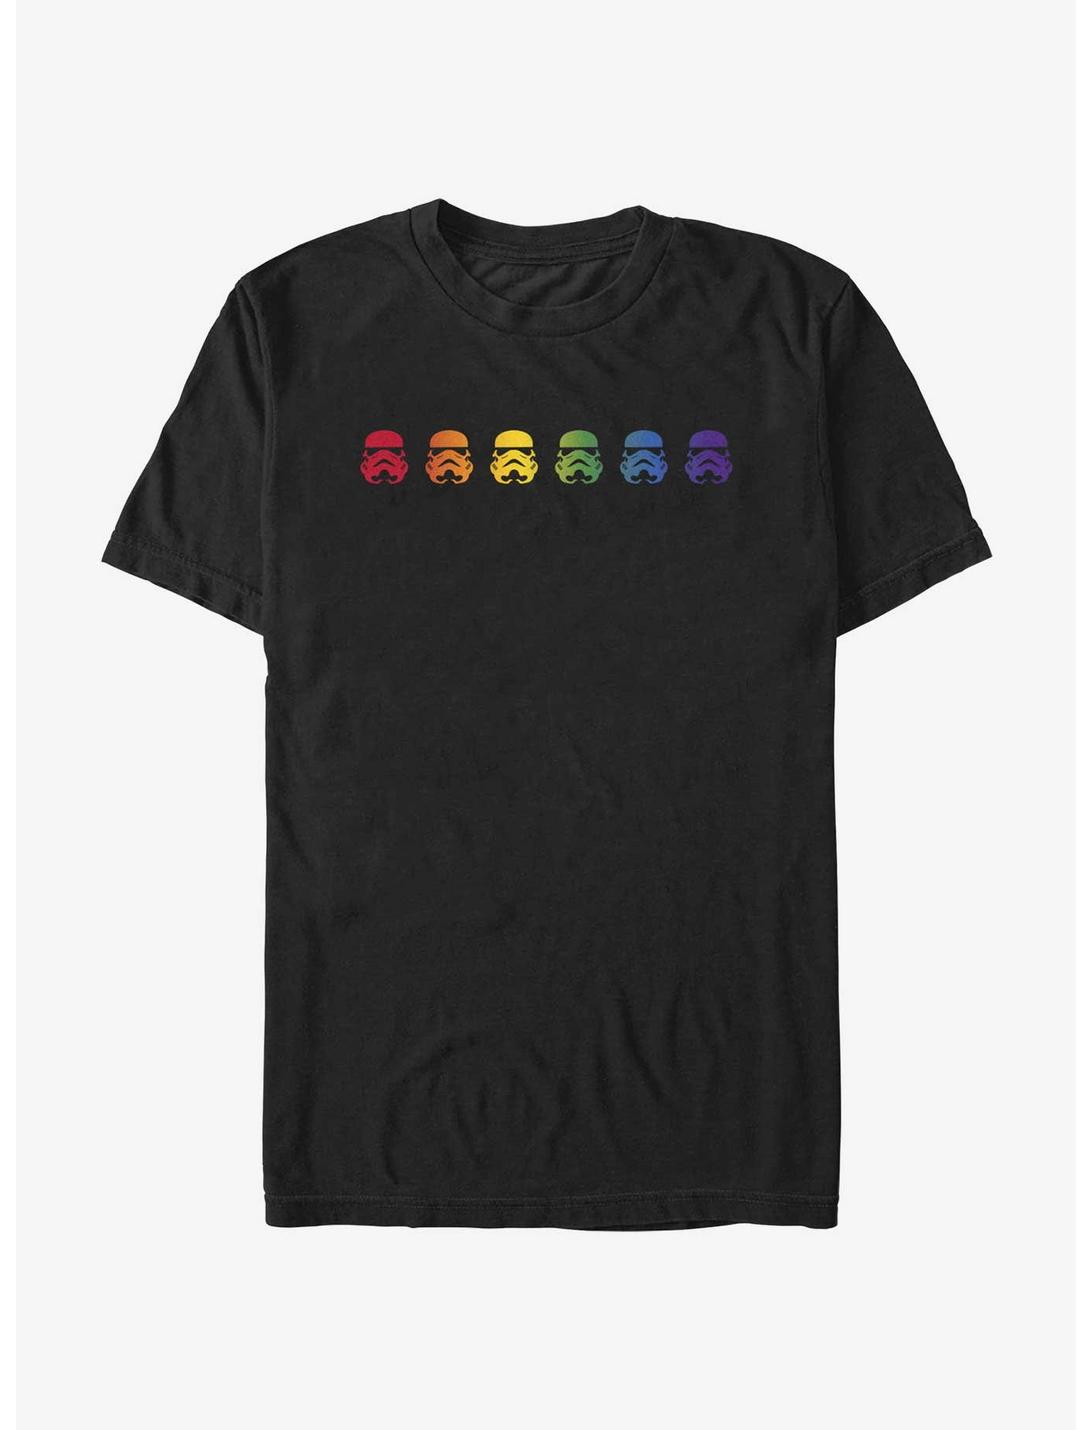 Star Wars Storm Trooper Rainbow T-Shirt, BLACK, hi-res